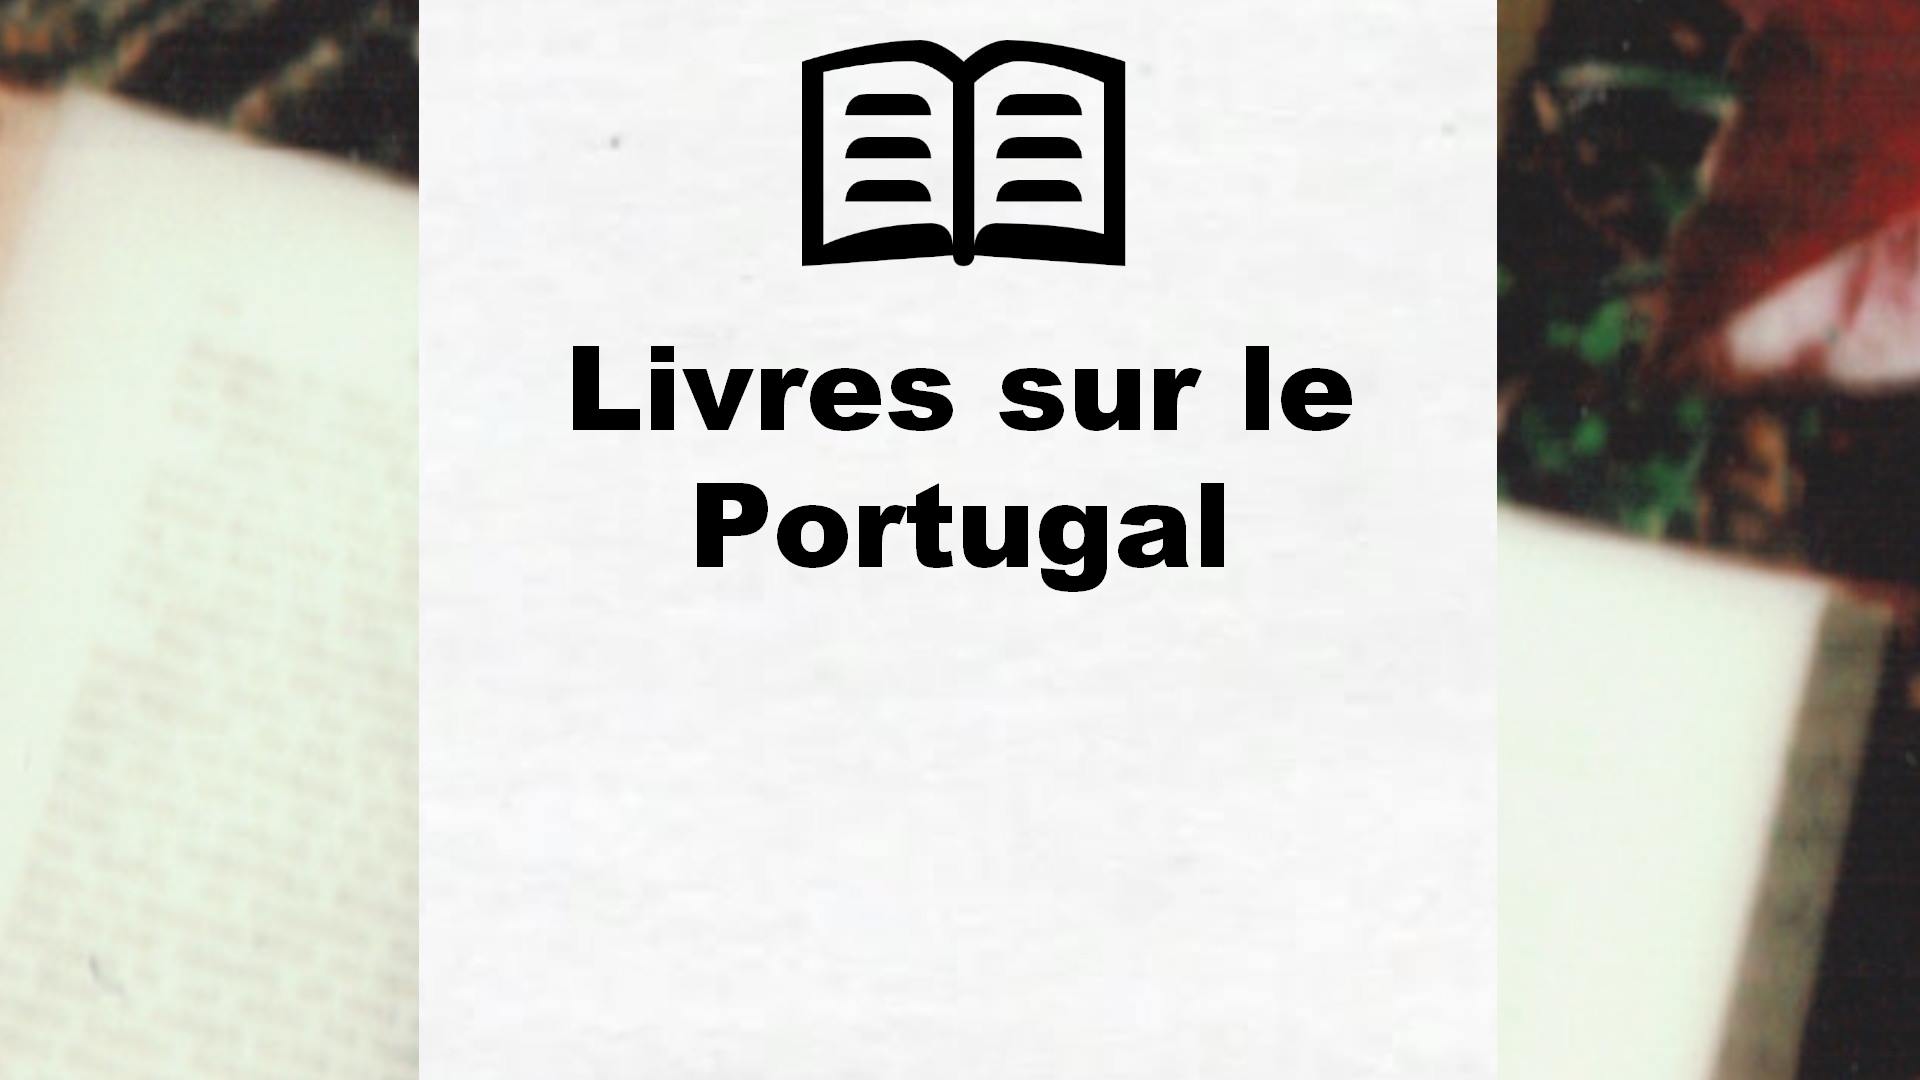 Livres sur le Portugal